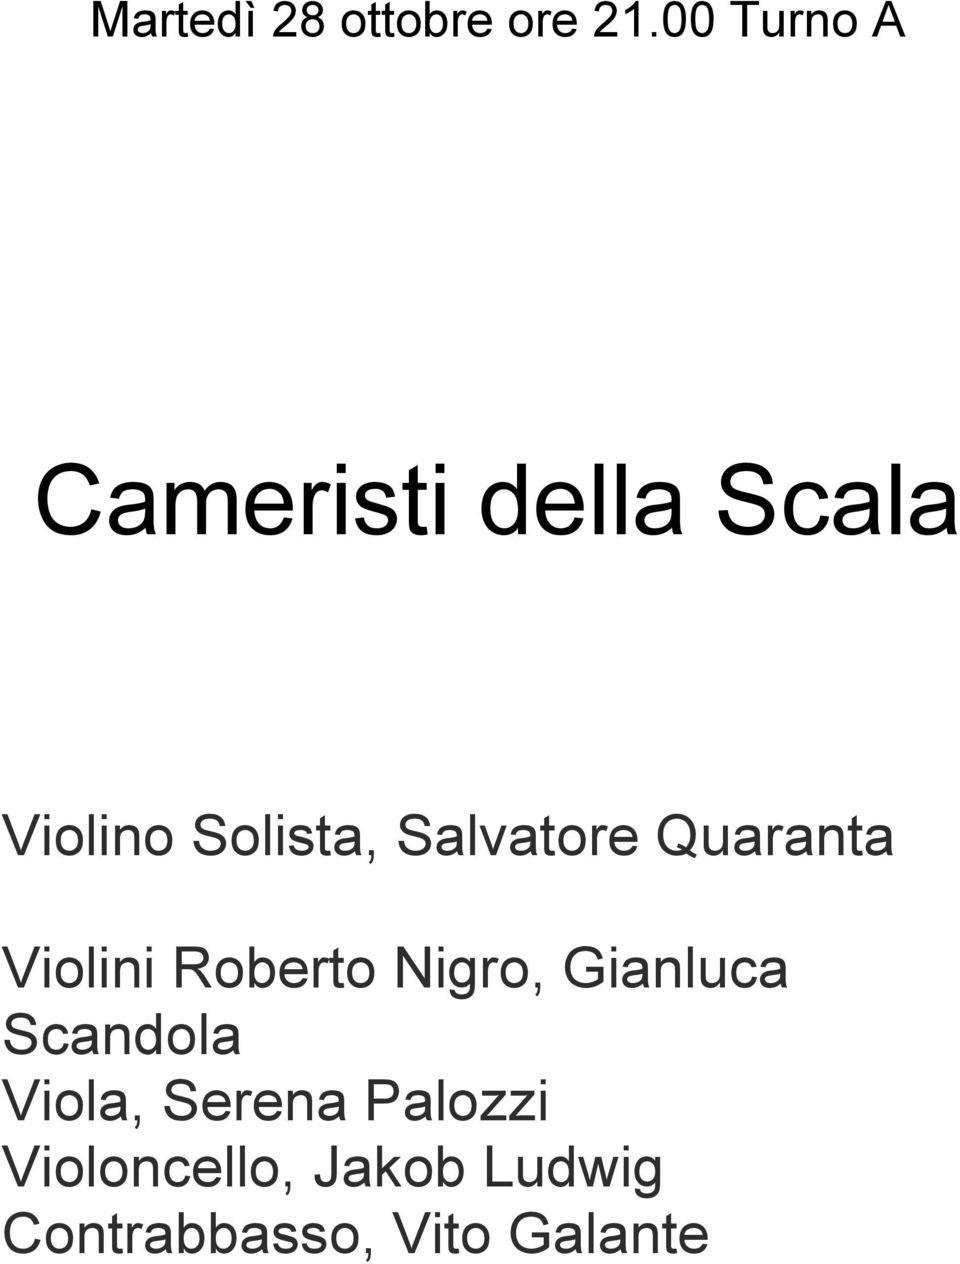 Salvatore Quaranta Violini Roberto Nigro, Gianluca